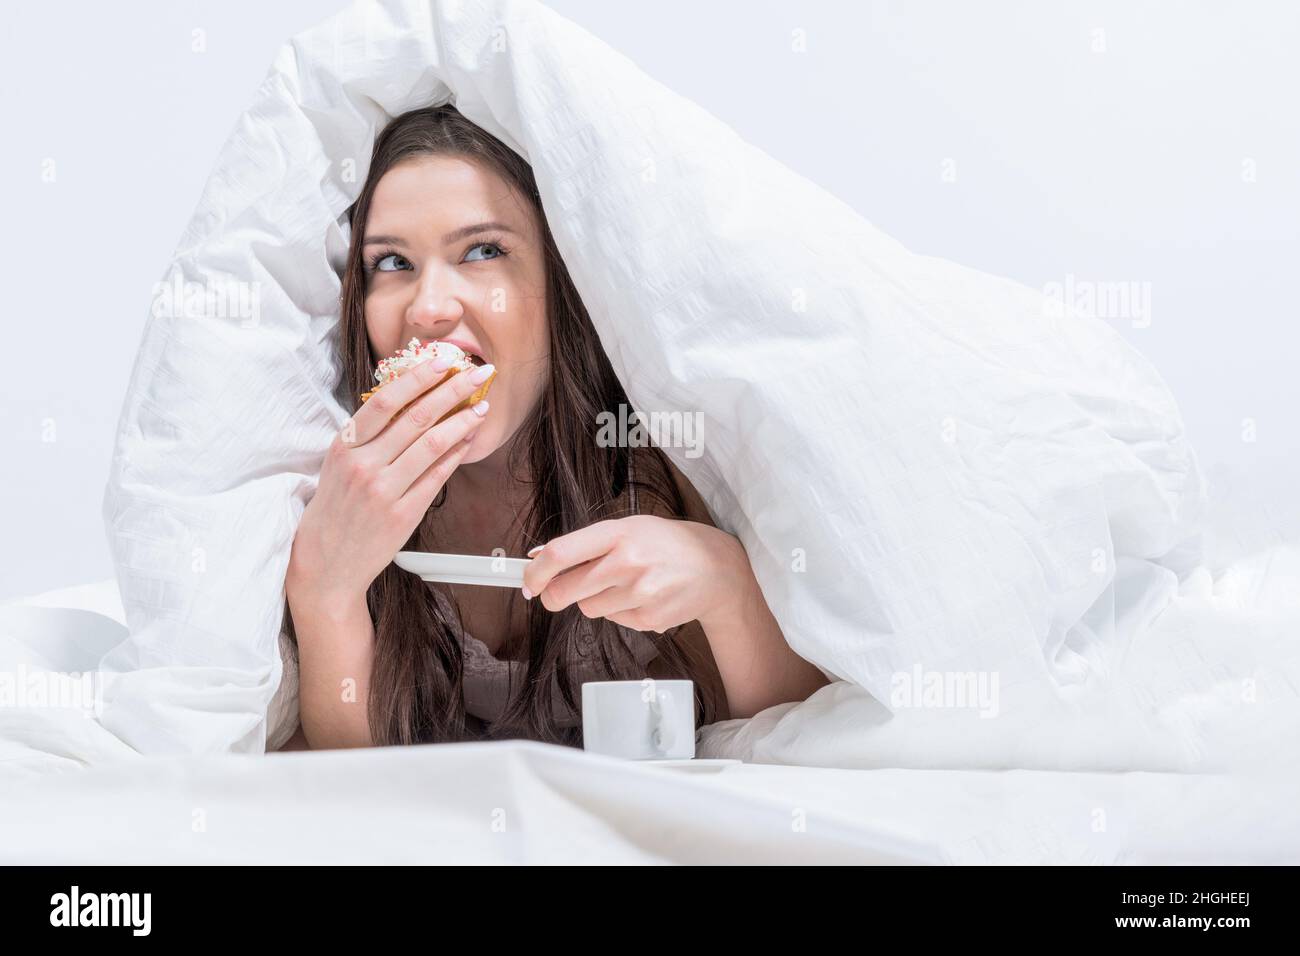 Das Mädchen isst heimlich Frühstück. Guten Morgen. Eine Frau liegt im Bett und beißt einen appetitlichen Cupcake ab, daneben gibt es Kaffee. Weißes Schlafzimmer. Stockfoto